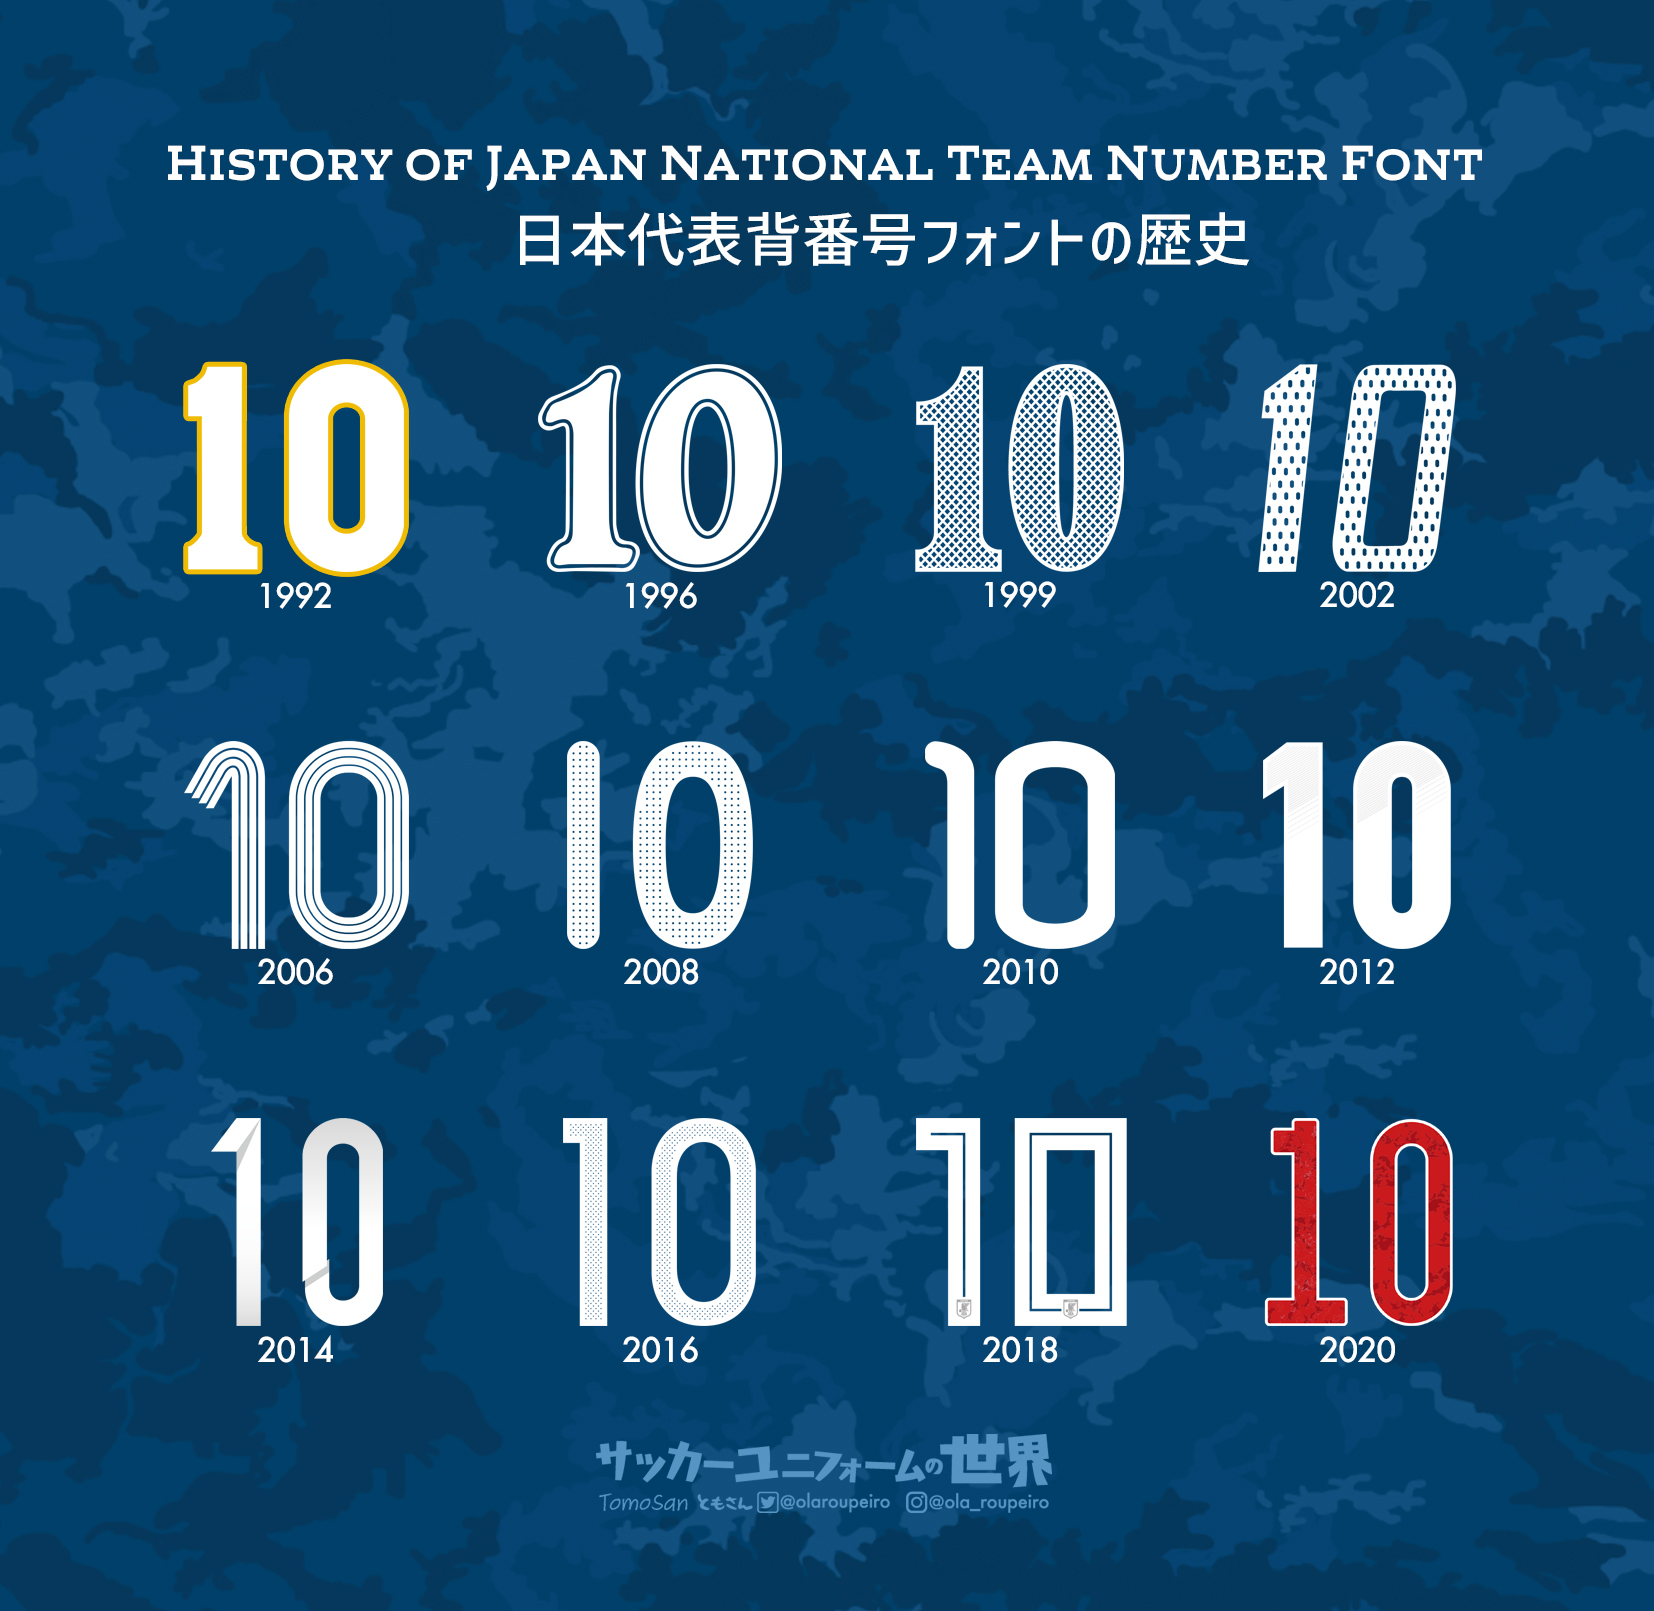 Twitter 上的 ともさん Tomosan サッカーユニフォームの世界 決戦を前に日本代表の歴代背番号フォントを振り返ってみましょう ユニフォームデザインは番号 ネーム フォントを抜きにしては語れない それぞれの時代を彩ったフォント あなたの思い出に残る